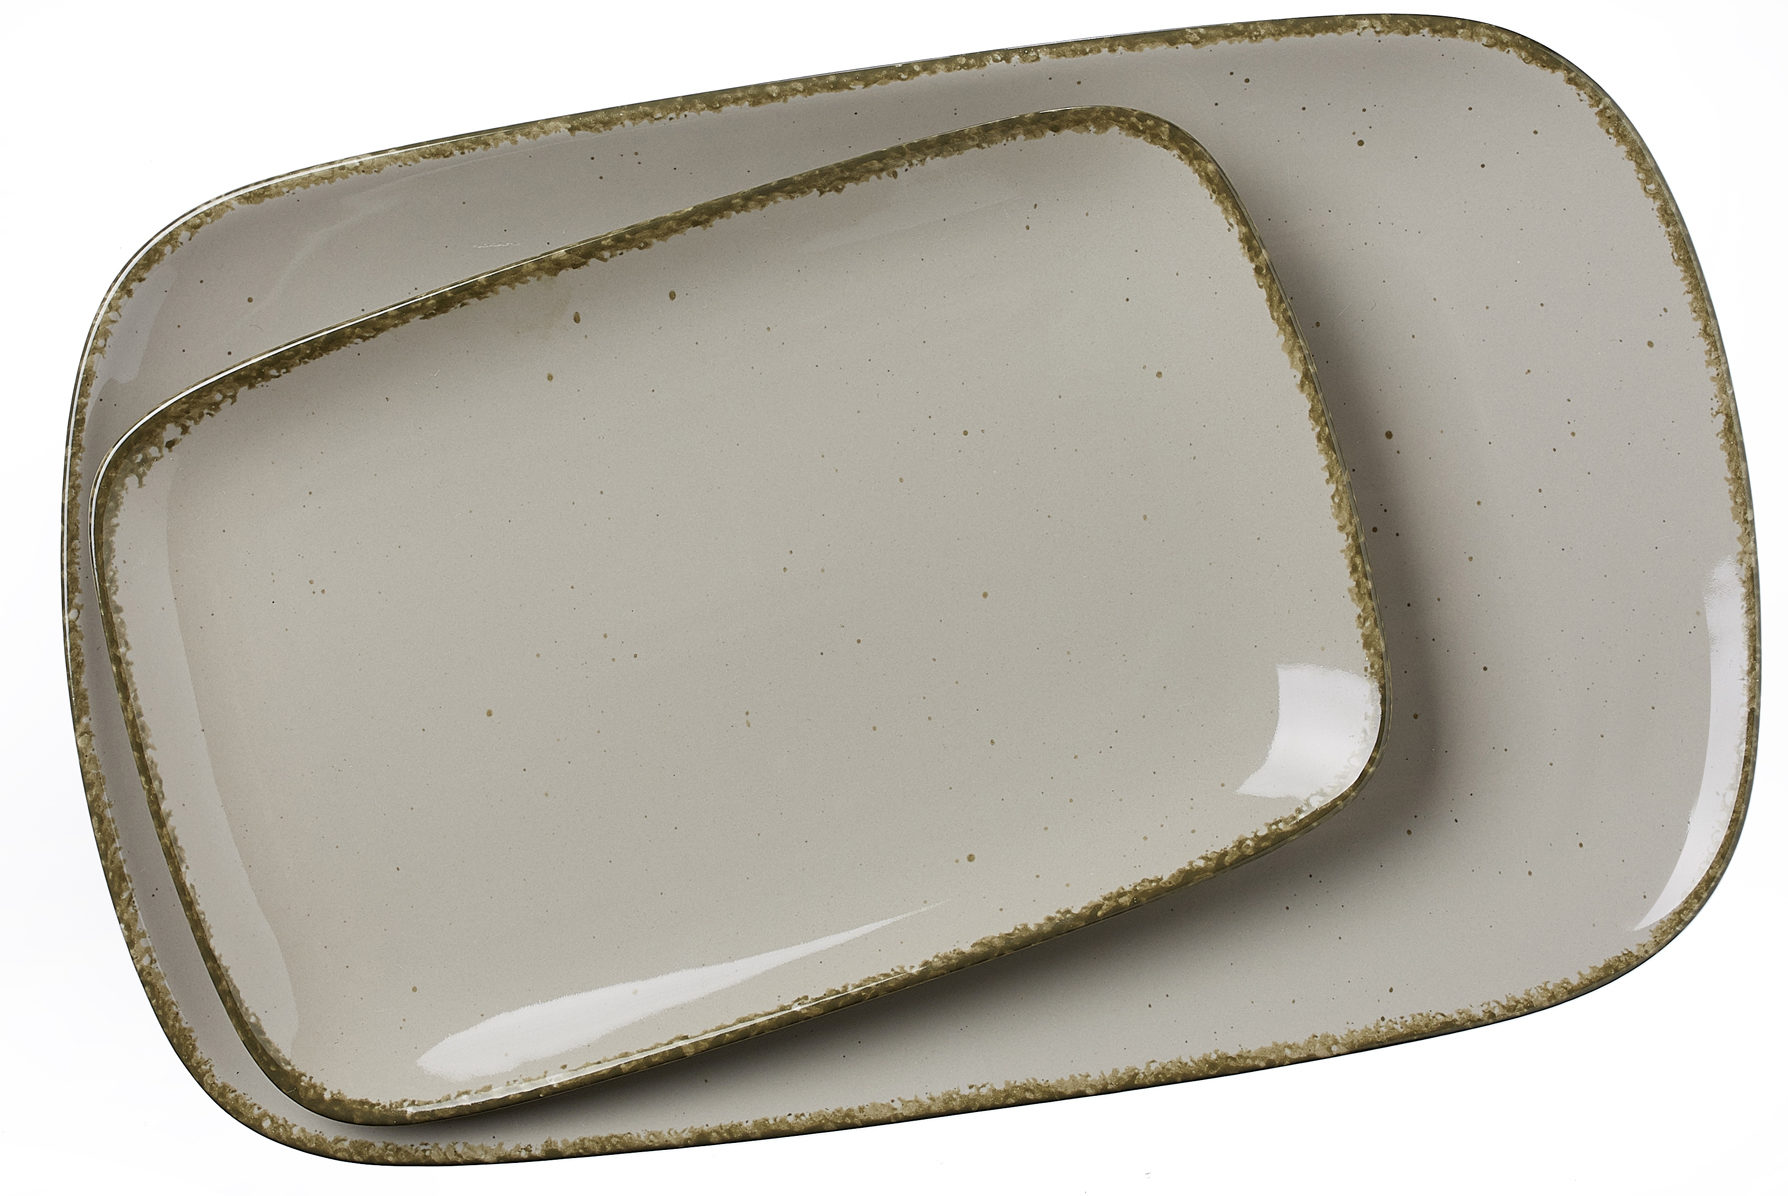 Servierplatte Ritzenhoff & breker aus Porzellan in Grau Ritzenhoff & Breker Servierplatten-Set Casa graues Porzellan - zweiteilig